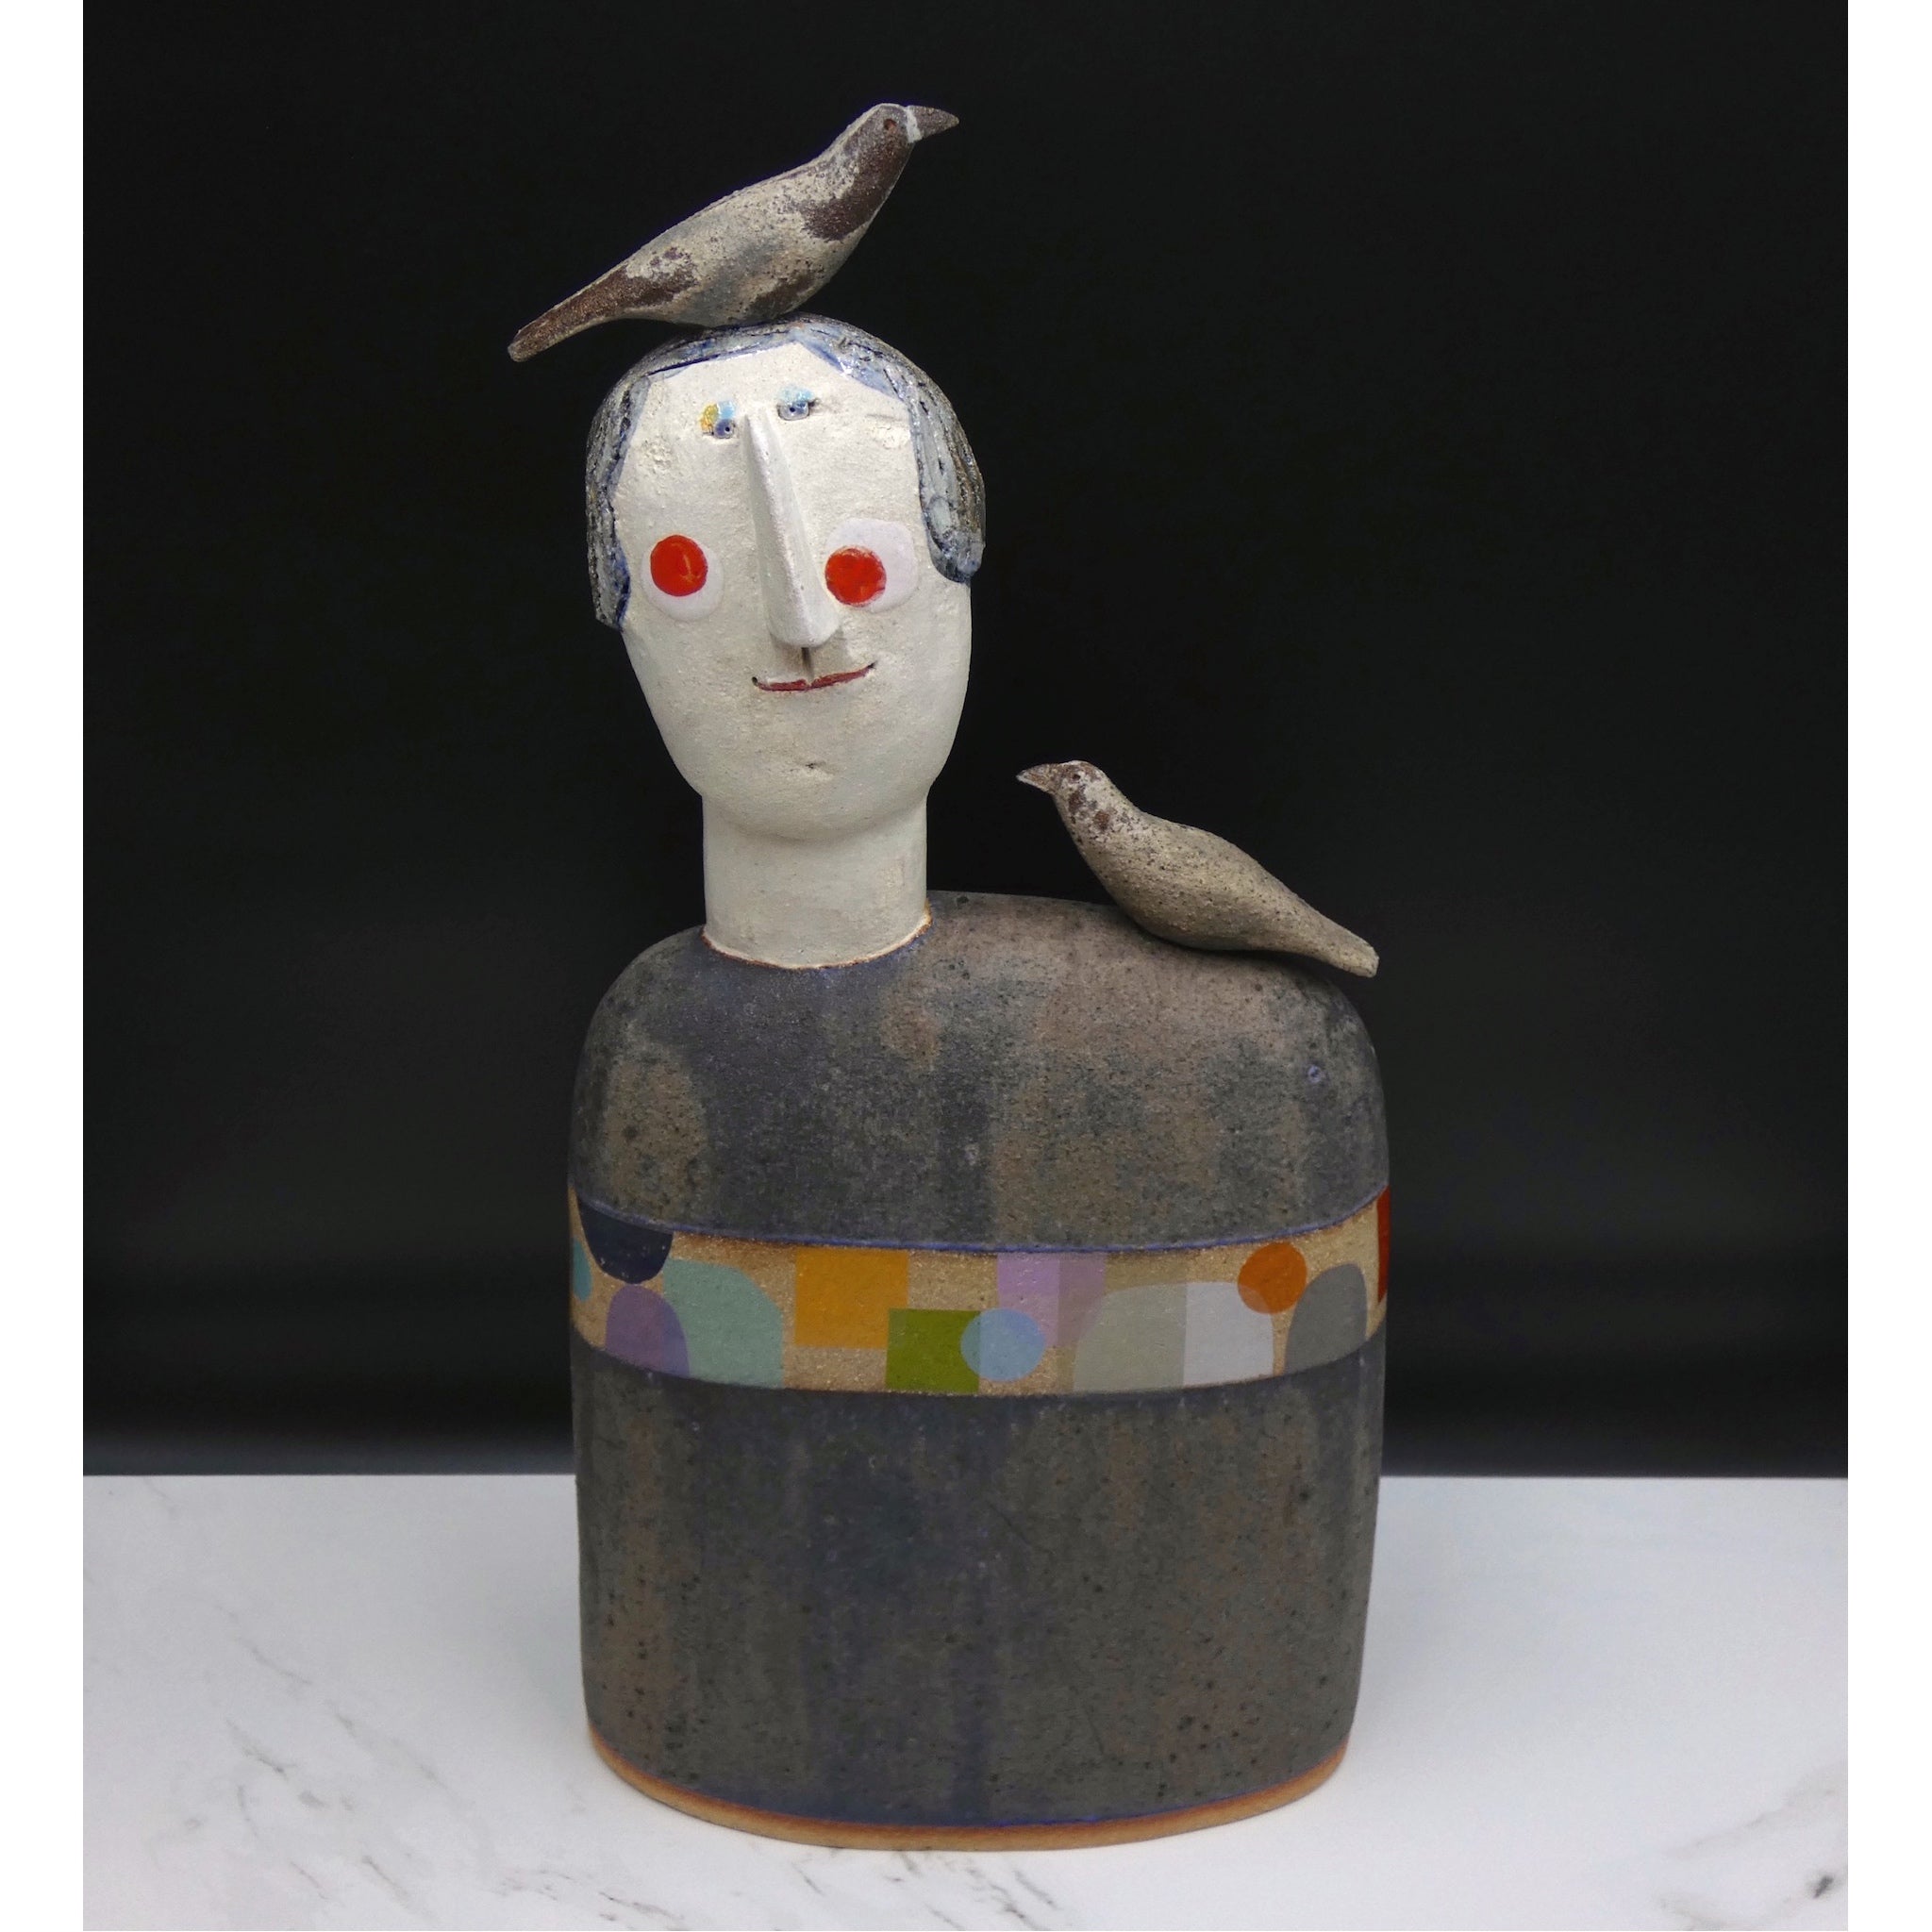 Bird Head sculpture by artist Jane Muir